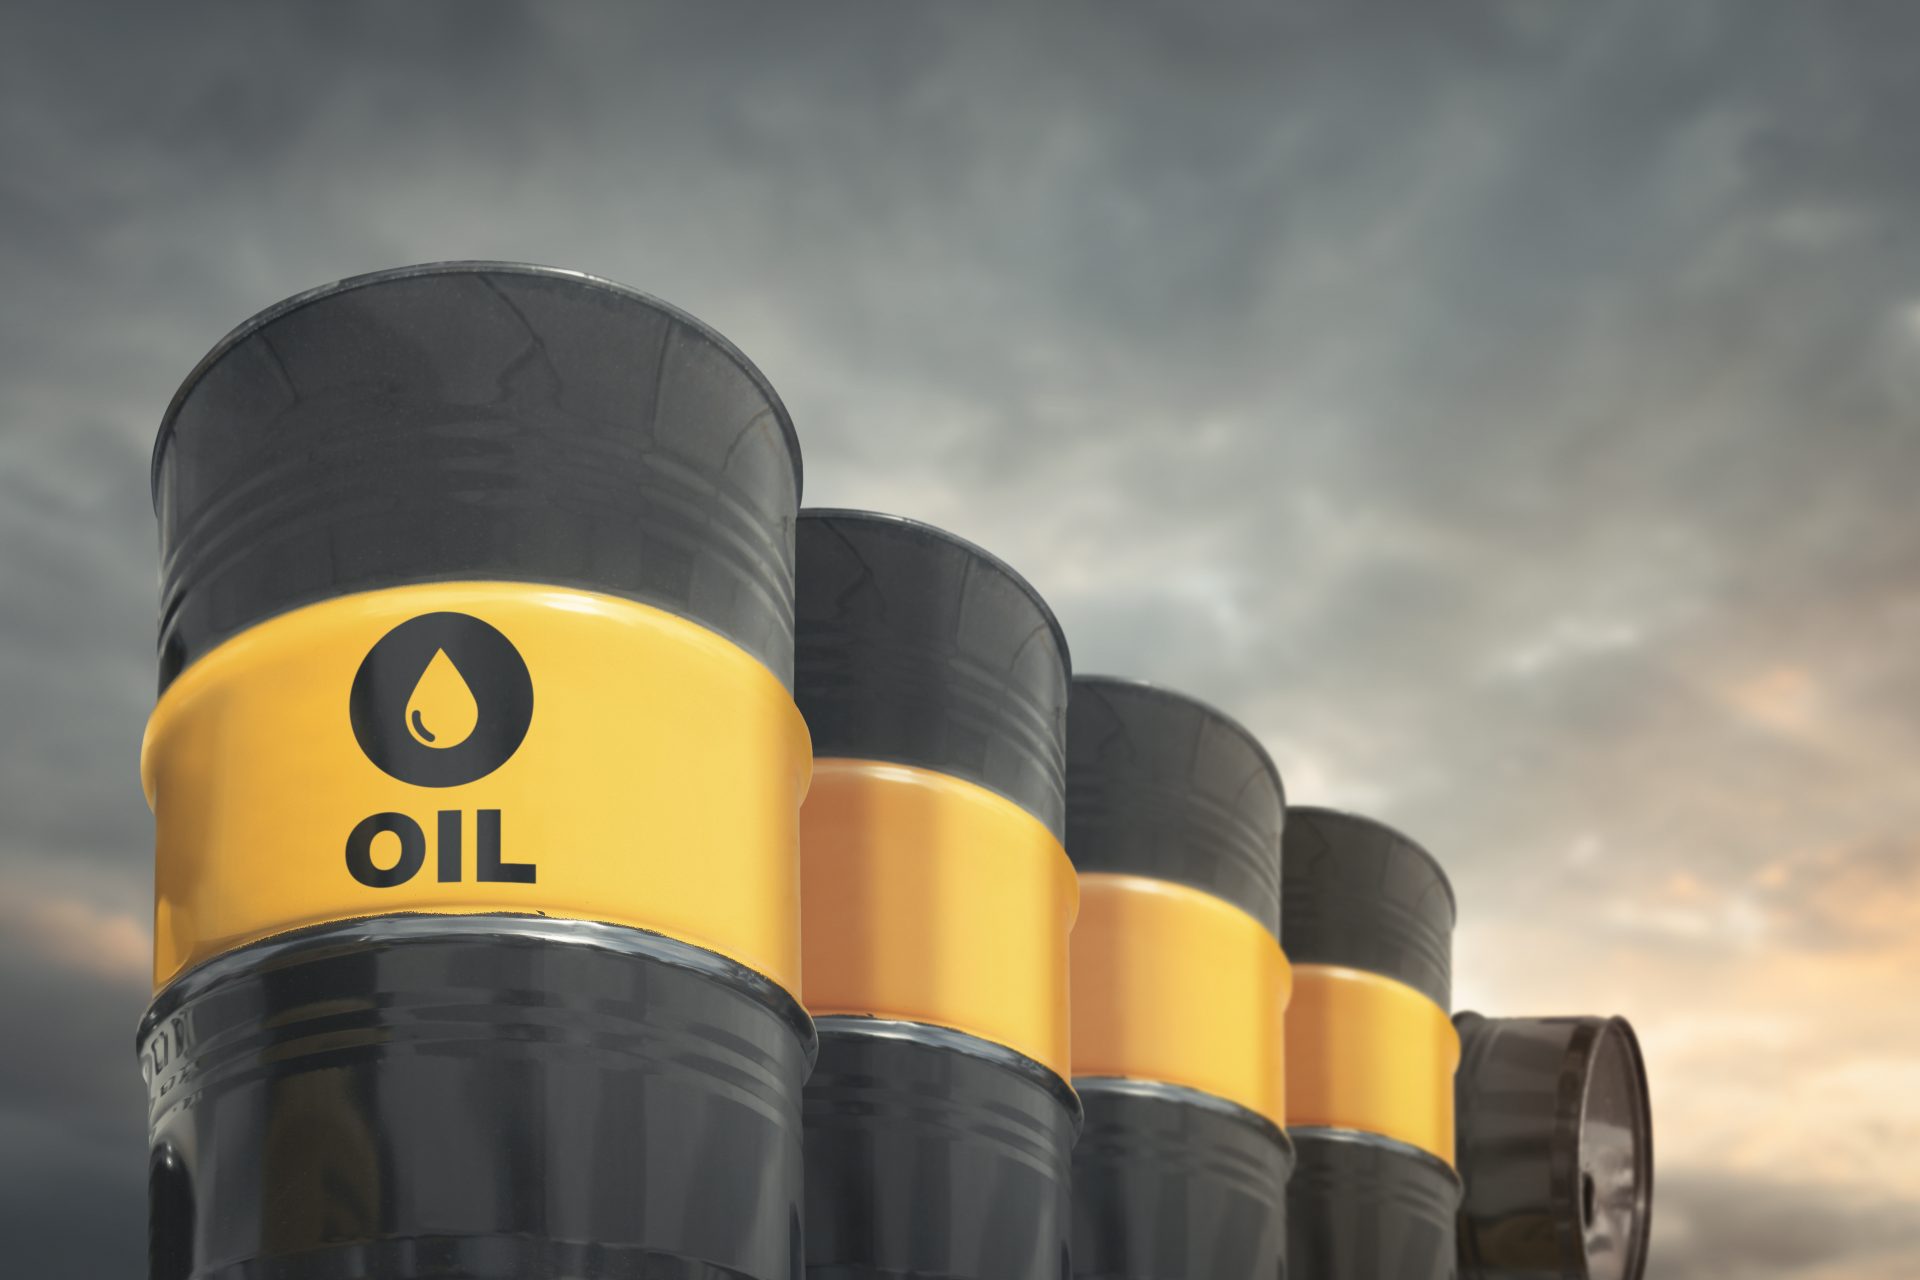 El petróleo sigue siendo una fuente de energía crucial